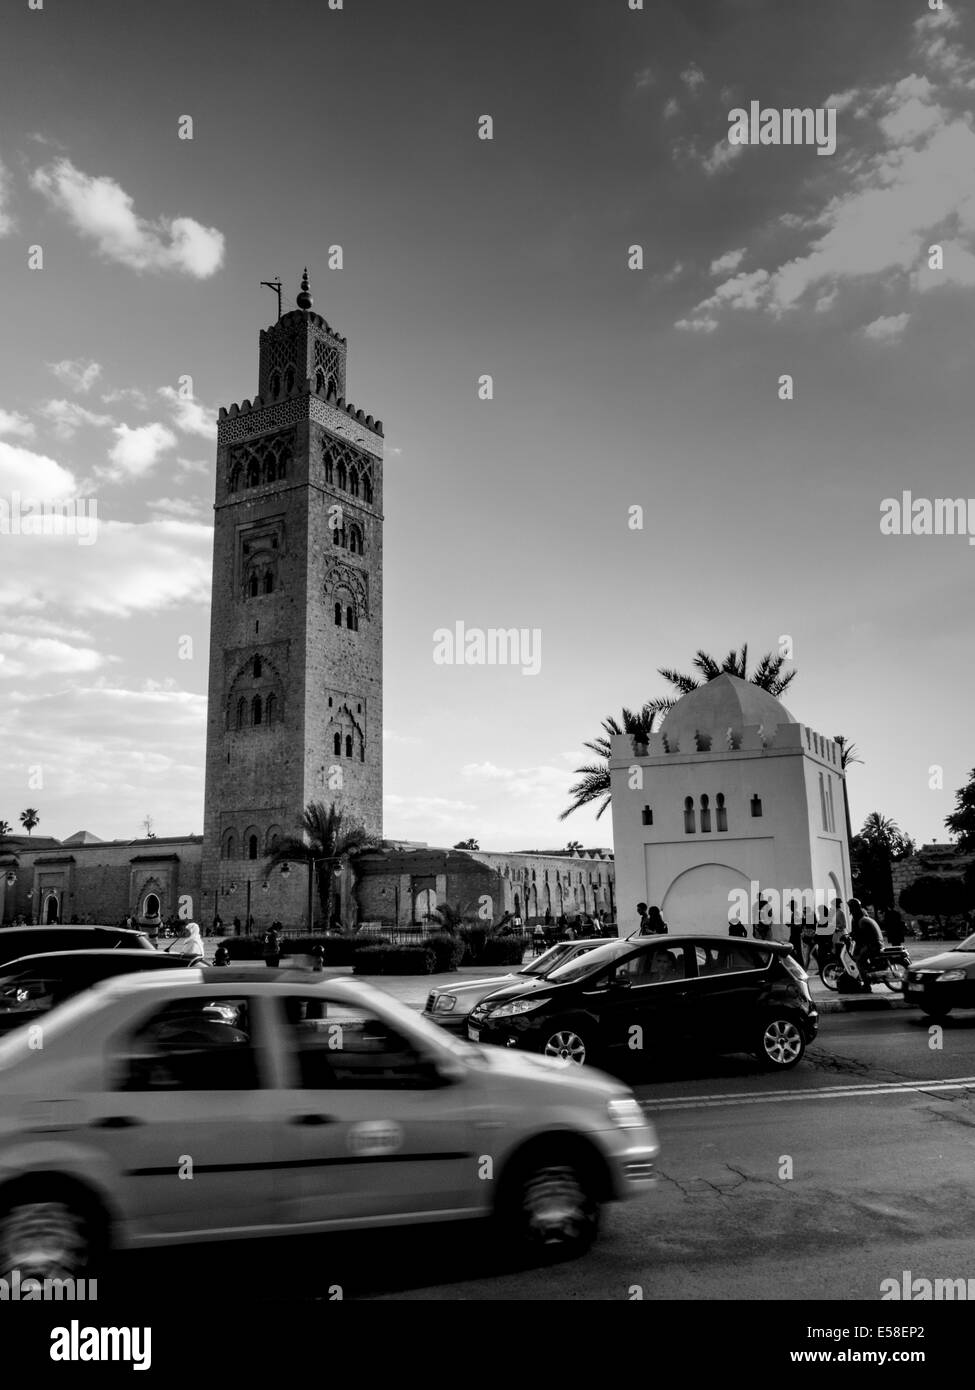 Die verkehrsreichen von Marrakesch saust um den stattlichen Koutoubia-Moschee und dem hoch aufragenden Minarett Stockfoto